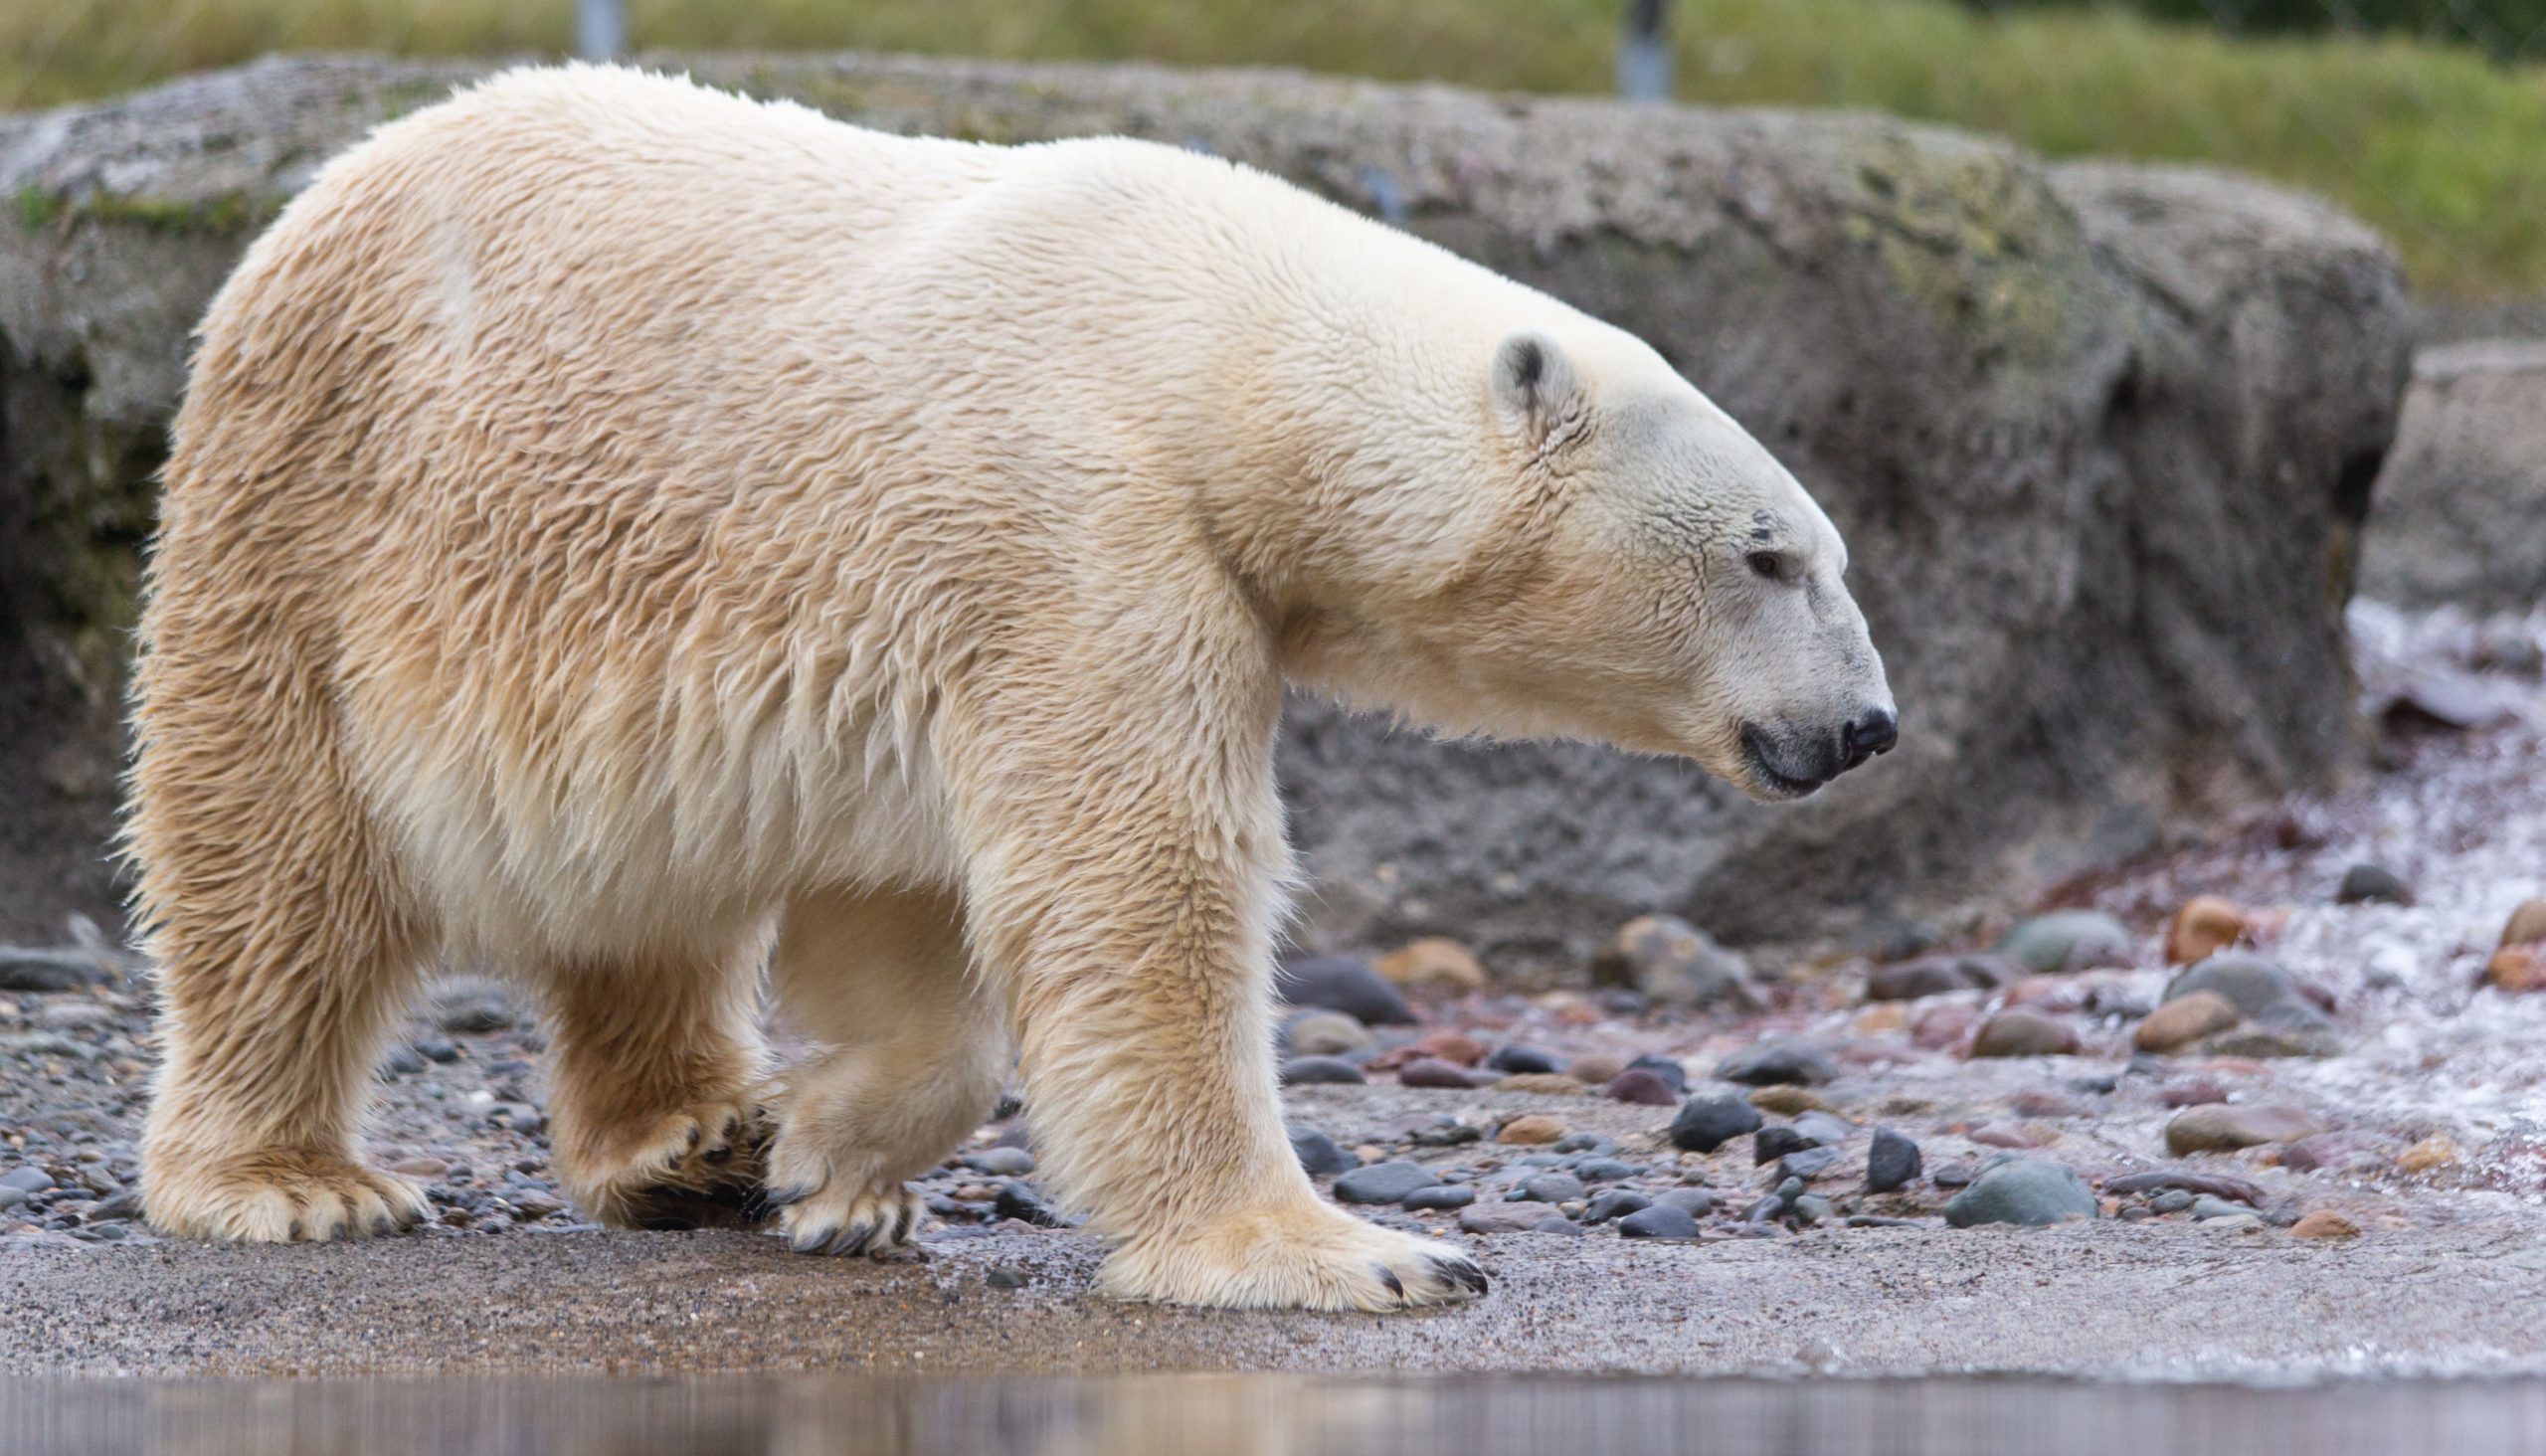 A polar bear walks through a rocky area.